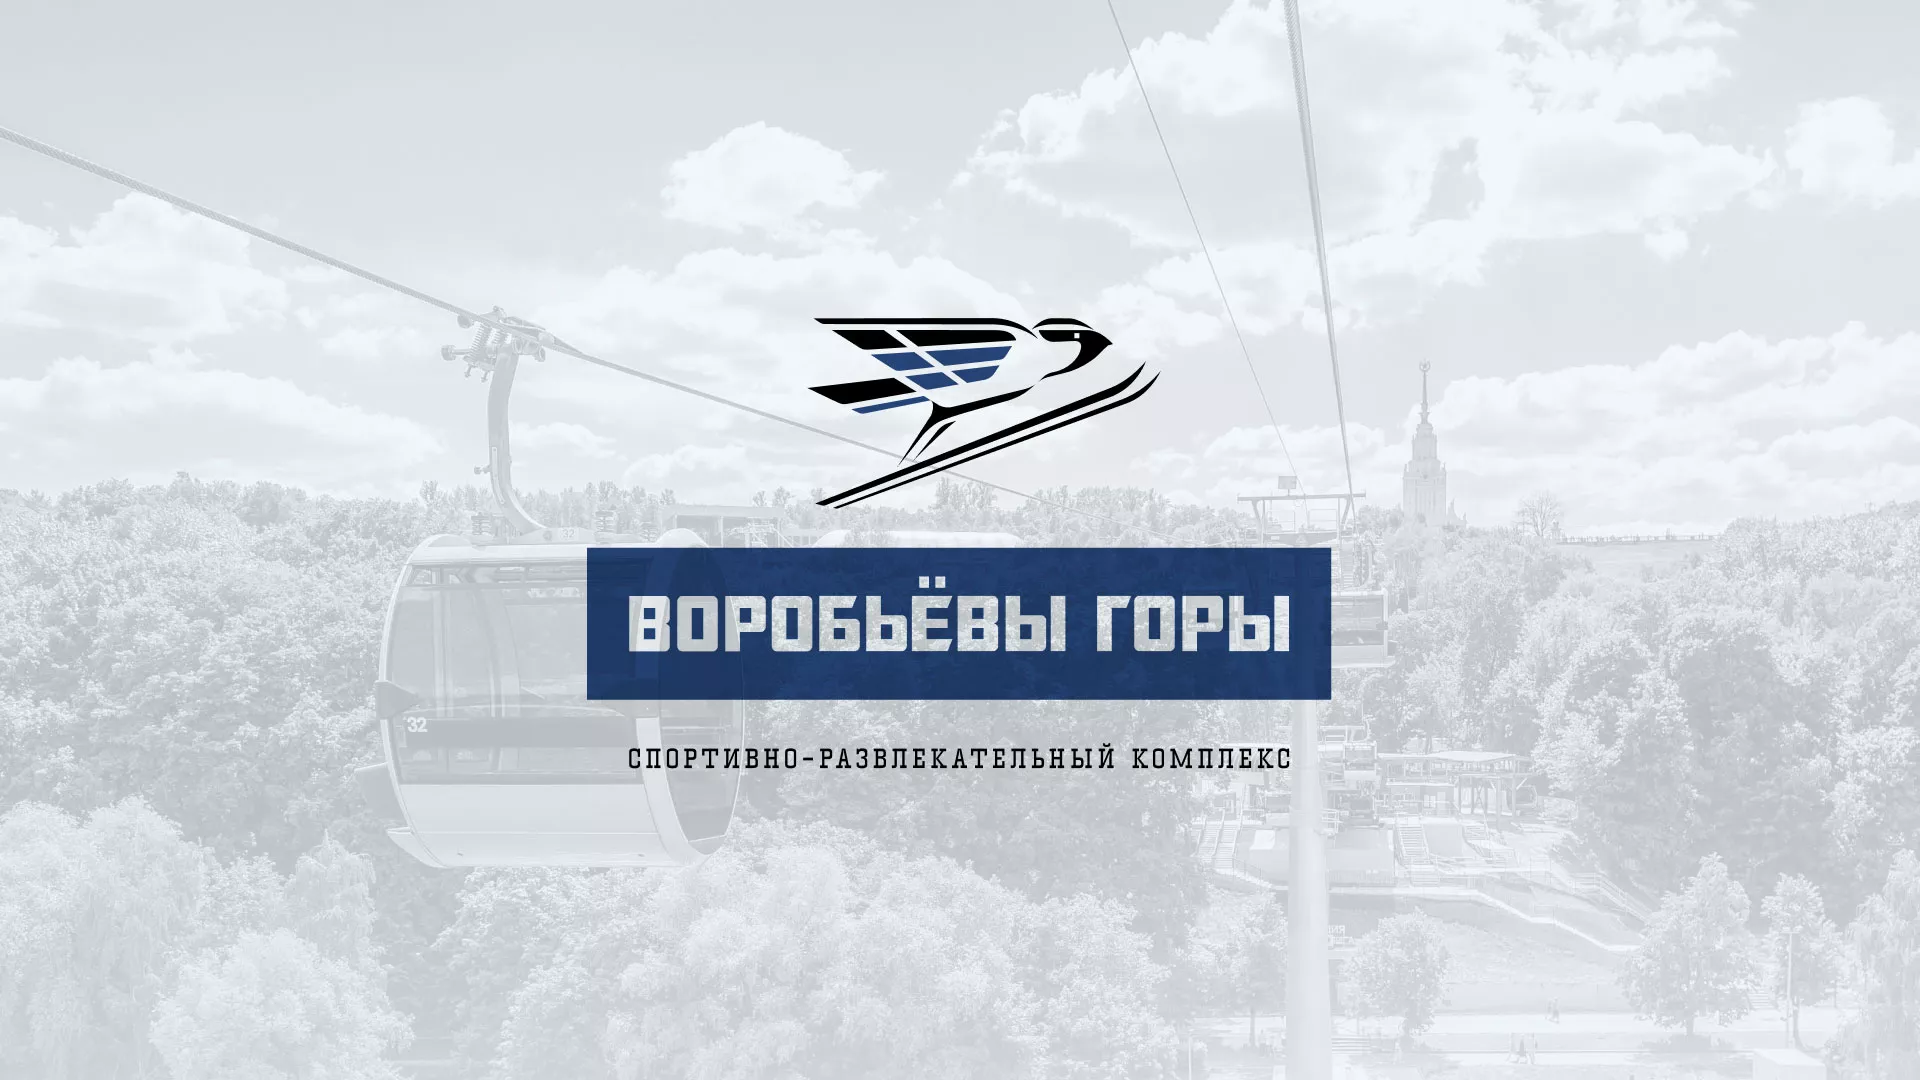 Разработка сайта в Сердобске для спортивно-развлекательного комплекса «Воробьёвы горы»